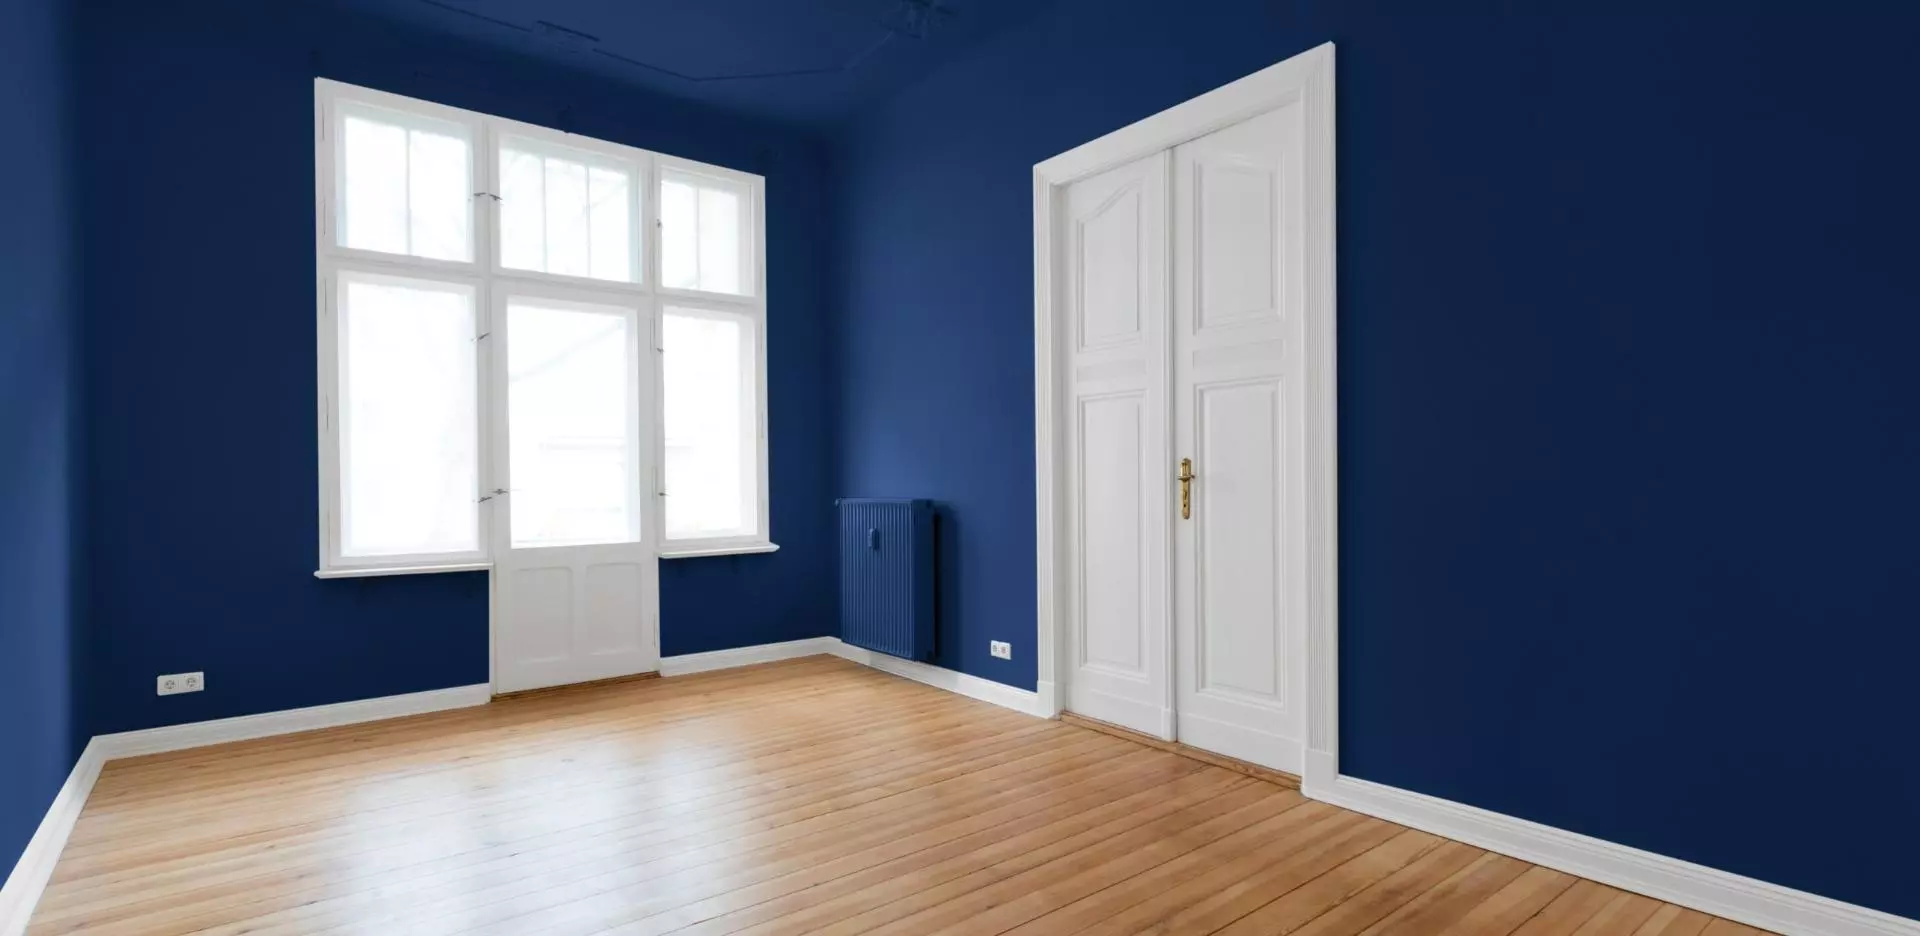 Pokój pomalowany na niebiesko